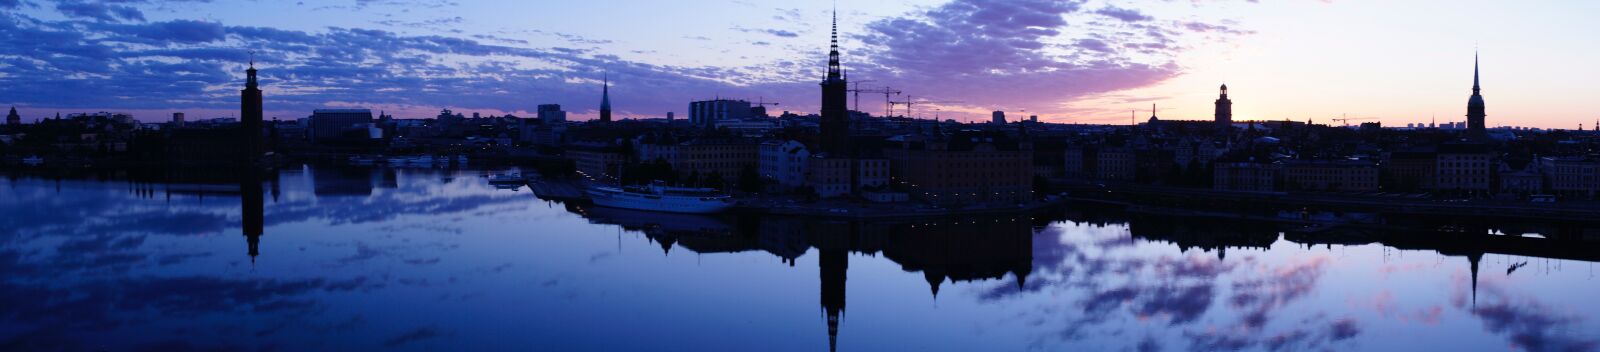 Sony Alpha NEX-5 sample photo. Panorama, stockholm, sunrise photography